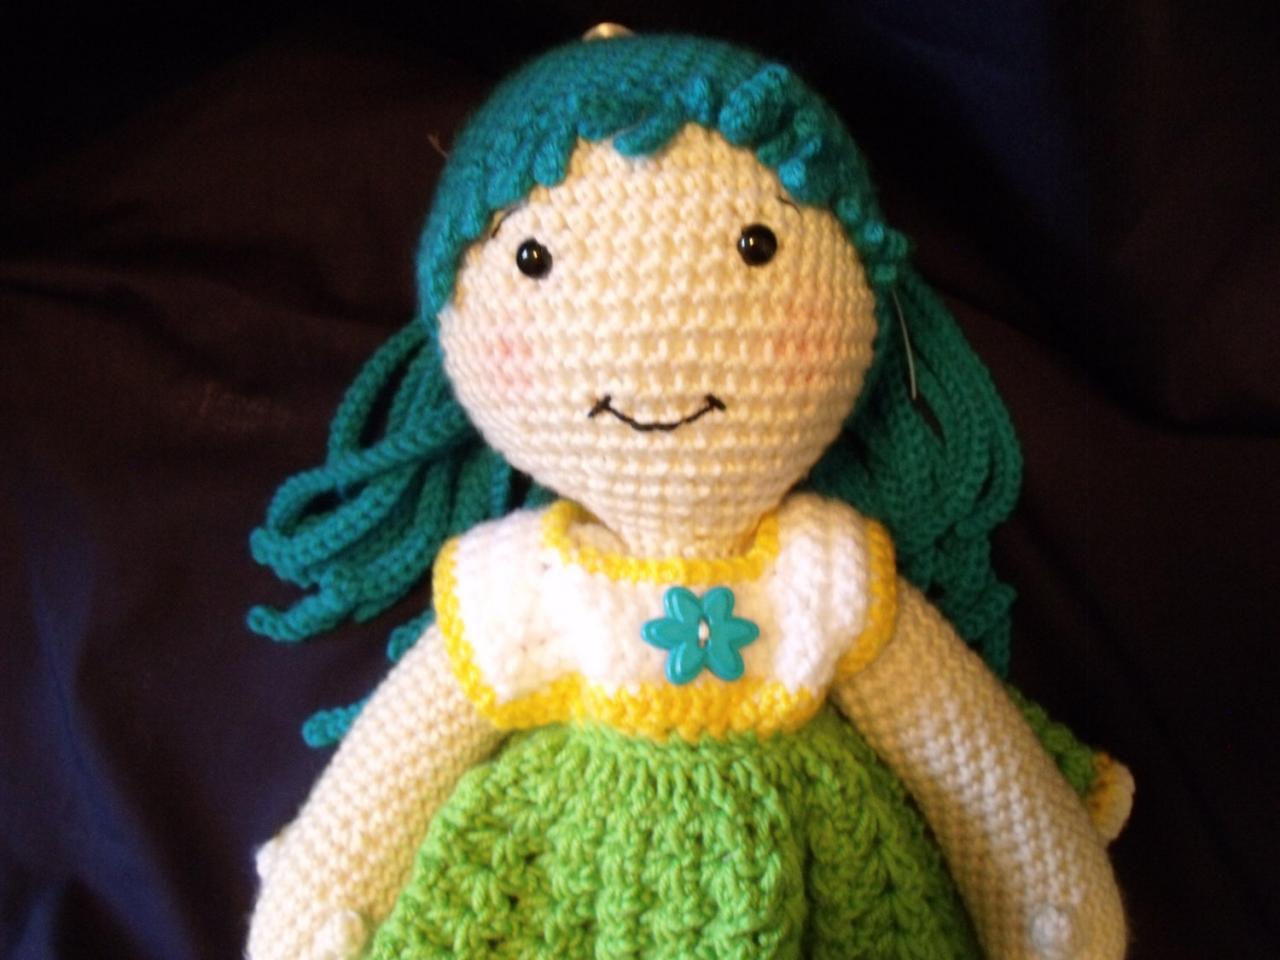 Crochet Amigurumi Doll Crochet Doll Crochet Rag Doll Baby Doll Handmade Doll Amigurumi Doll Crochet Baby Doll